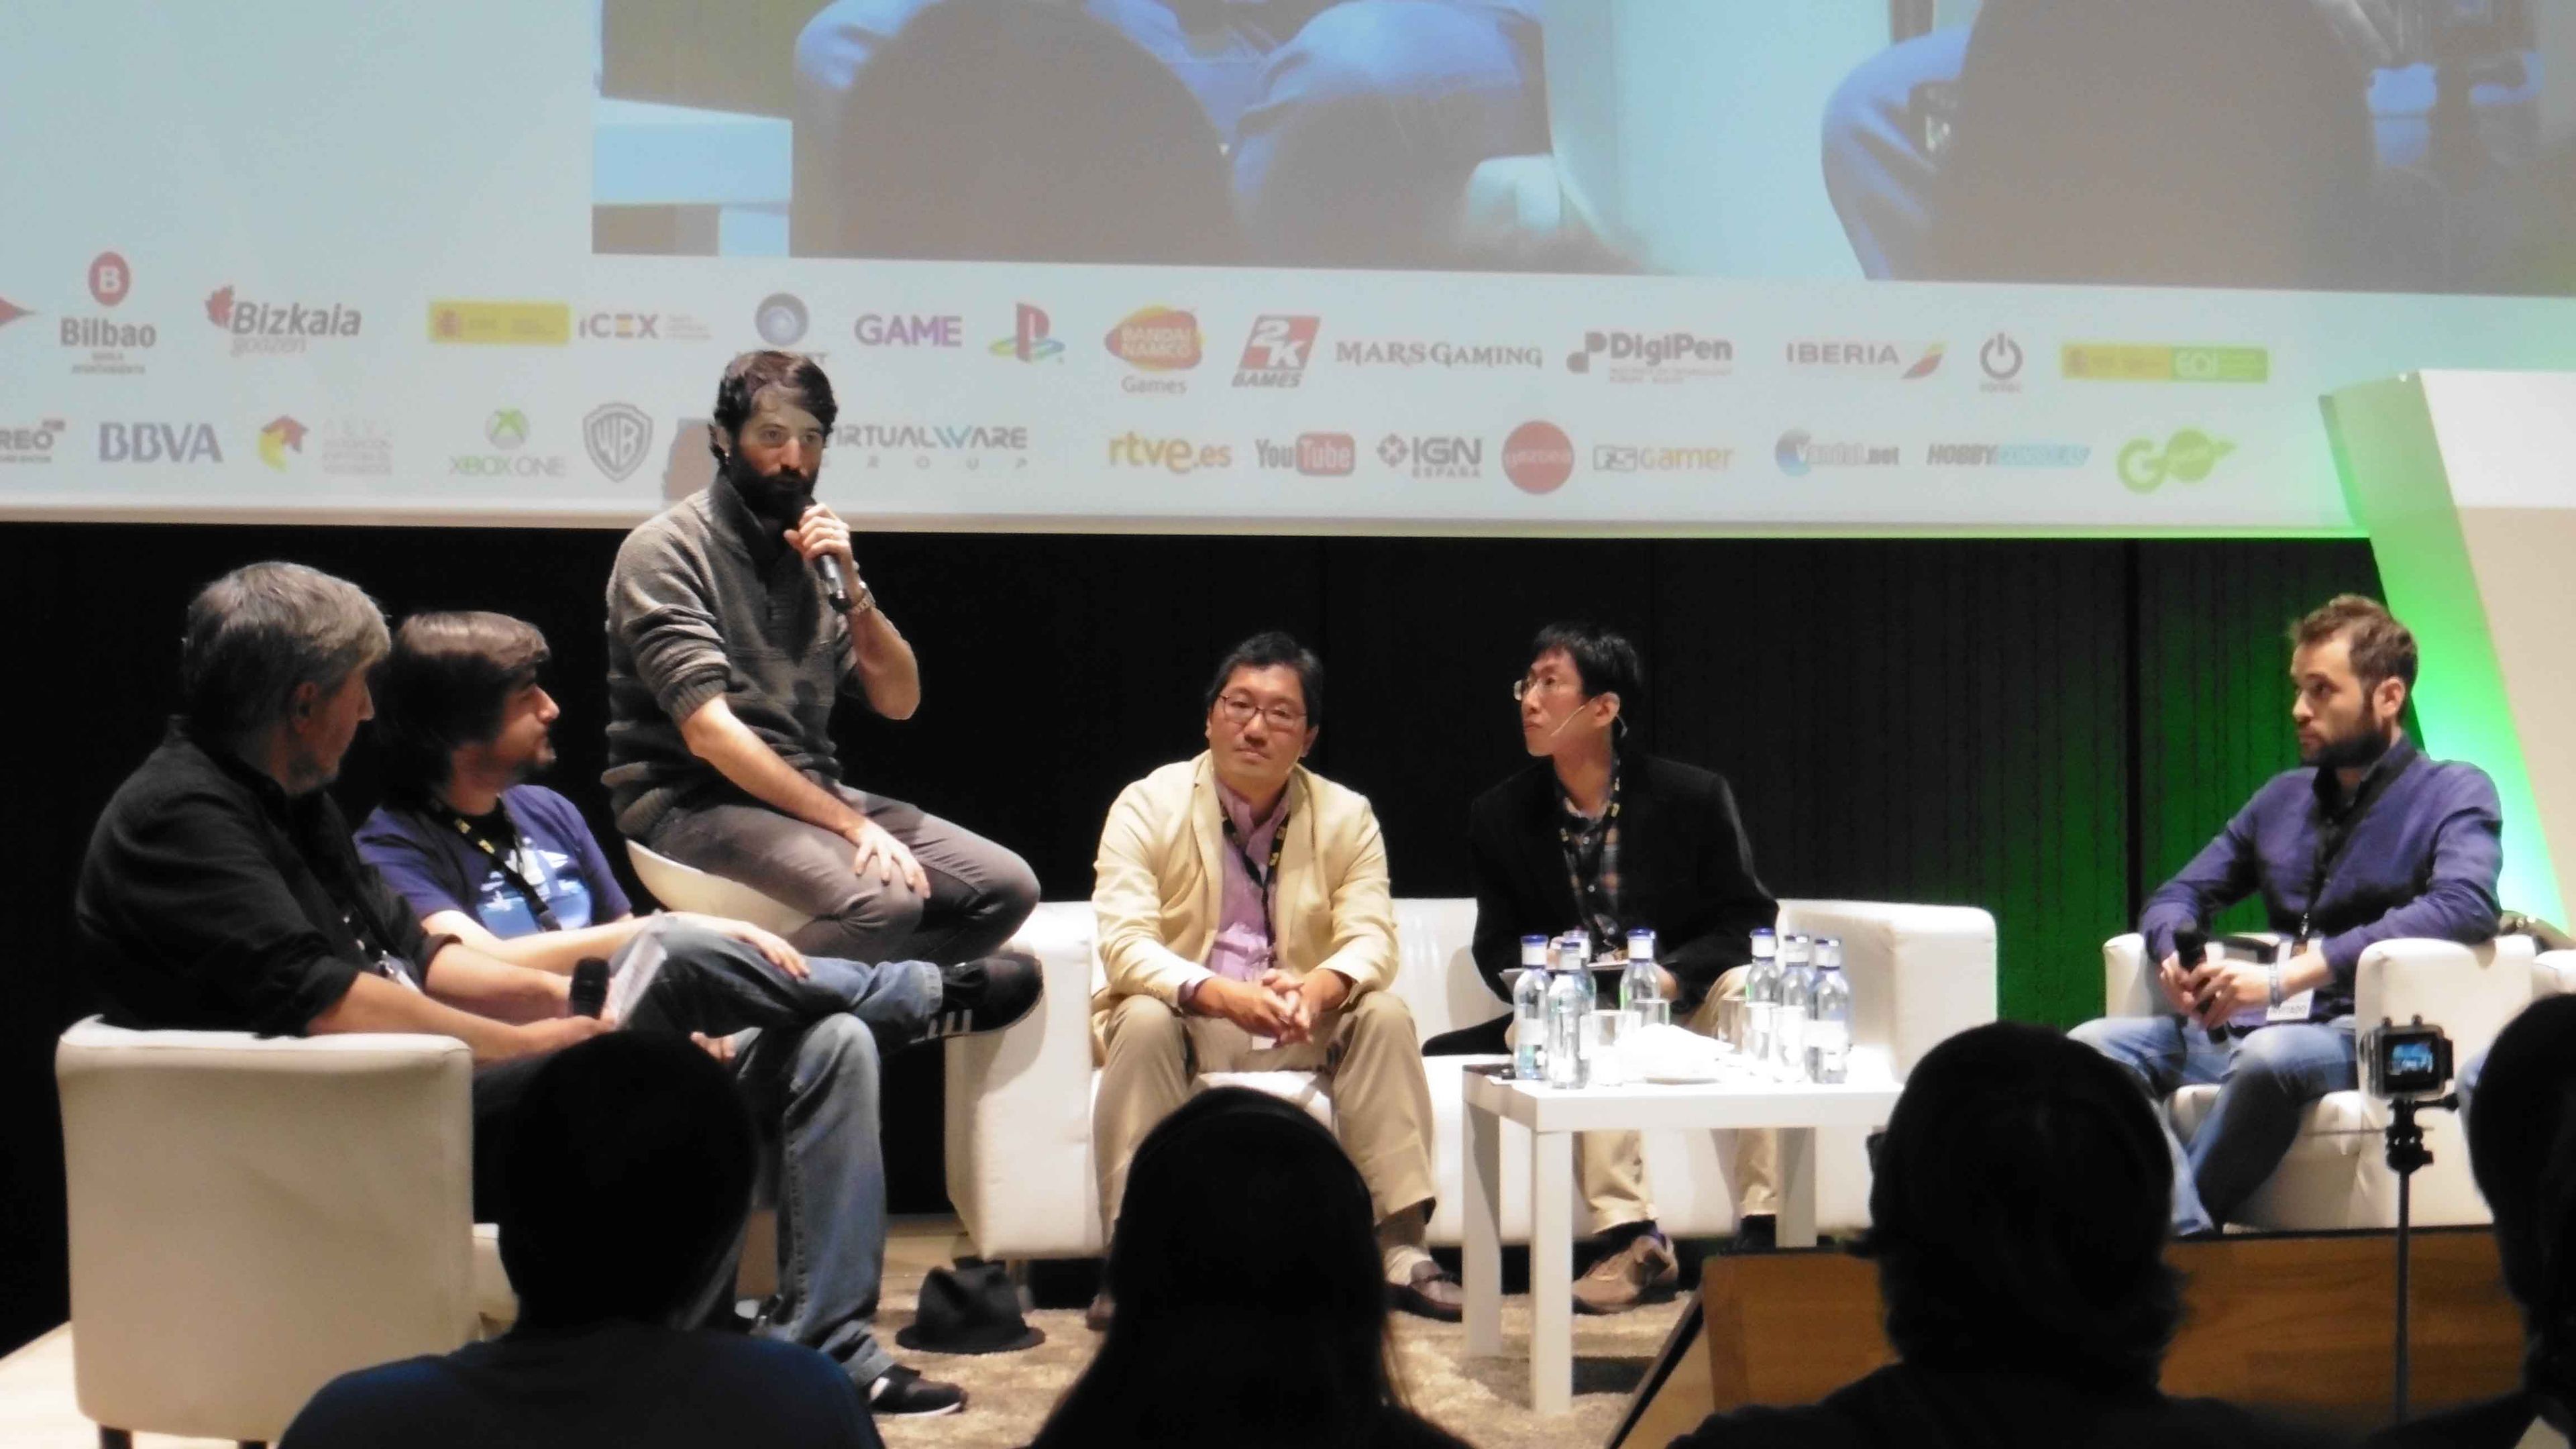 Antonio Santo moderó la charla que reunió a Yuji Naka con diversos miembros de la prensa.